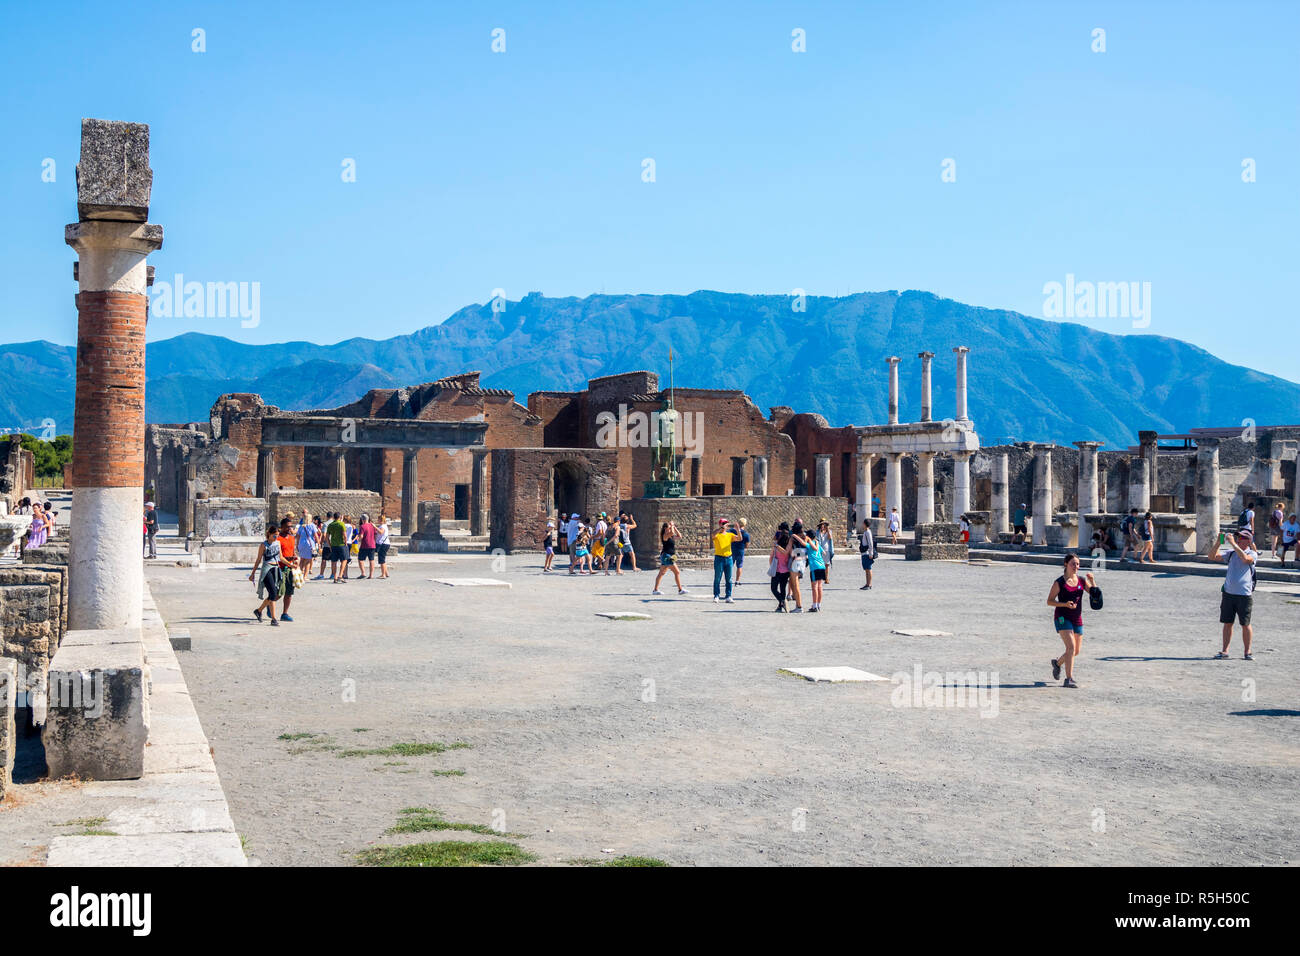 Les touristes visitant la foule explorting pompéi forum portique place principale, préservée du site mondial de l'éruption du Vésuve, Naples, Italie l'histoire romaine Banque D'Images